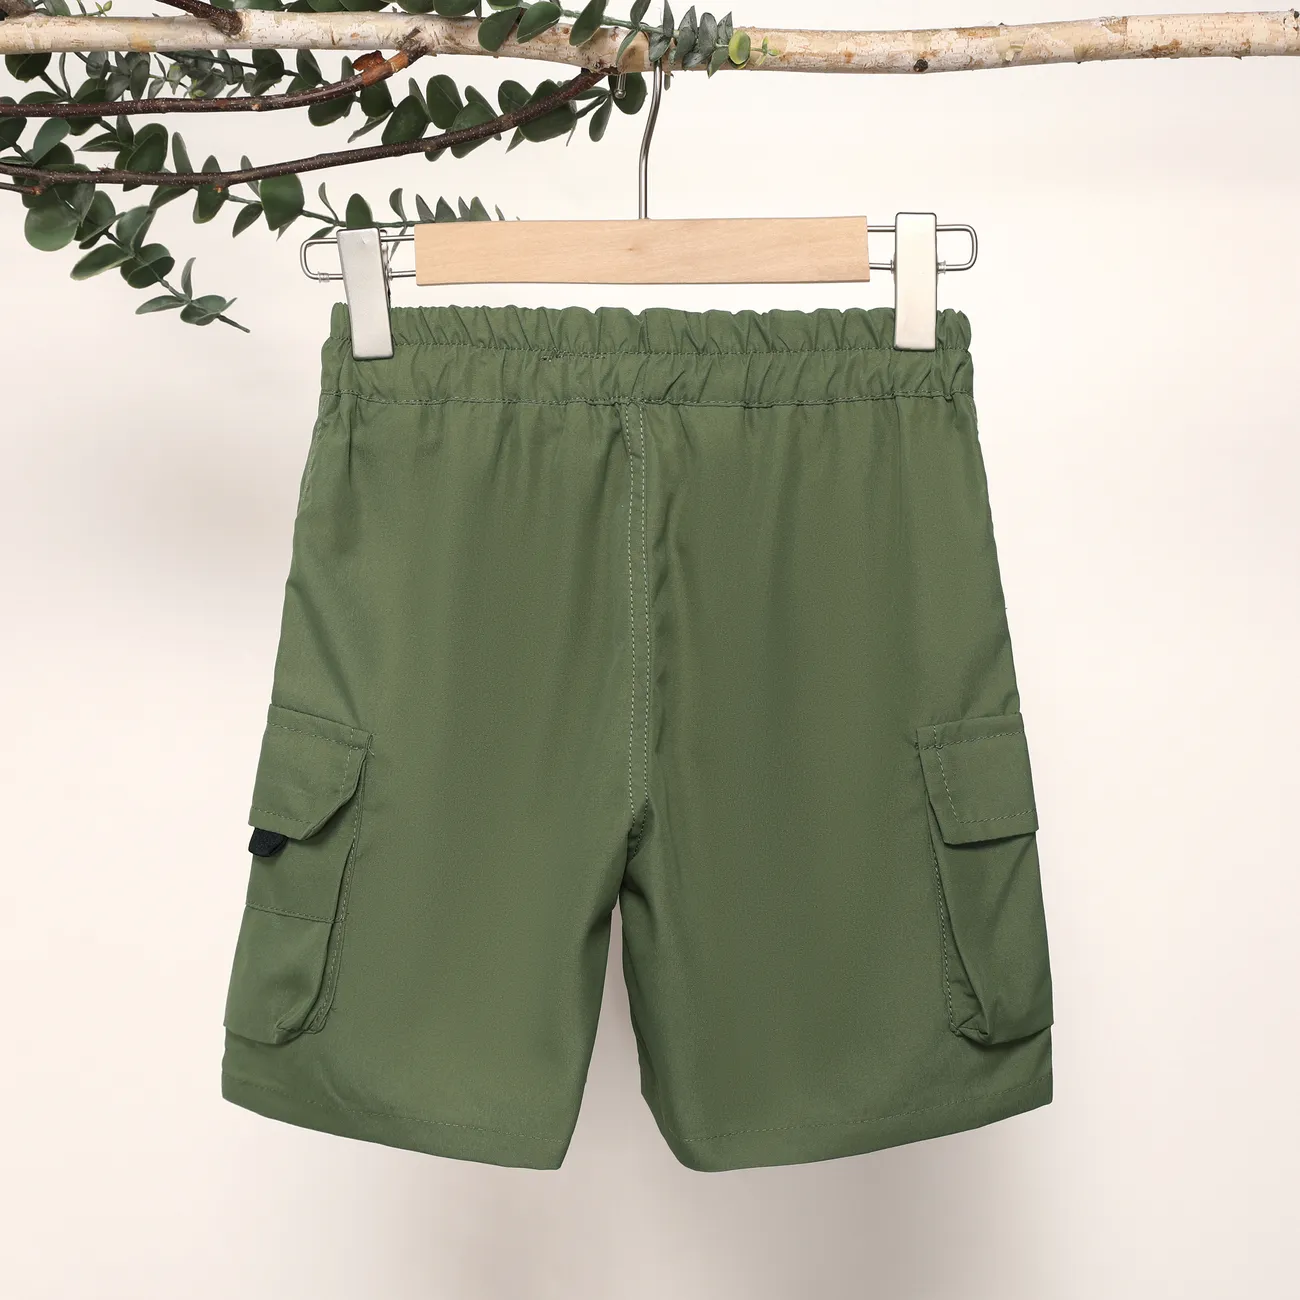 Lässige Shorts für Jungen mit aufgesetzten Taschen, 1-teiliges Set, einfarbig, 100% Polyester, maschinenwaschbar Armeegrün big image 1